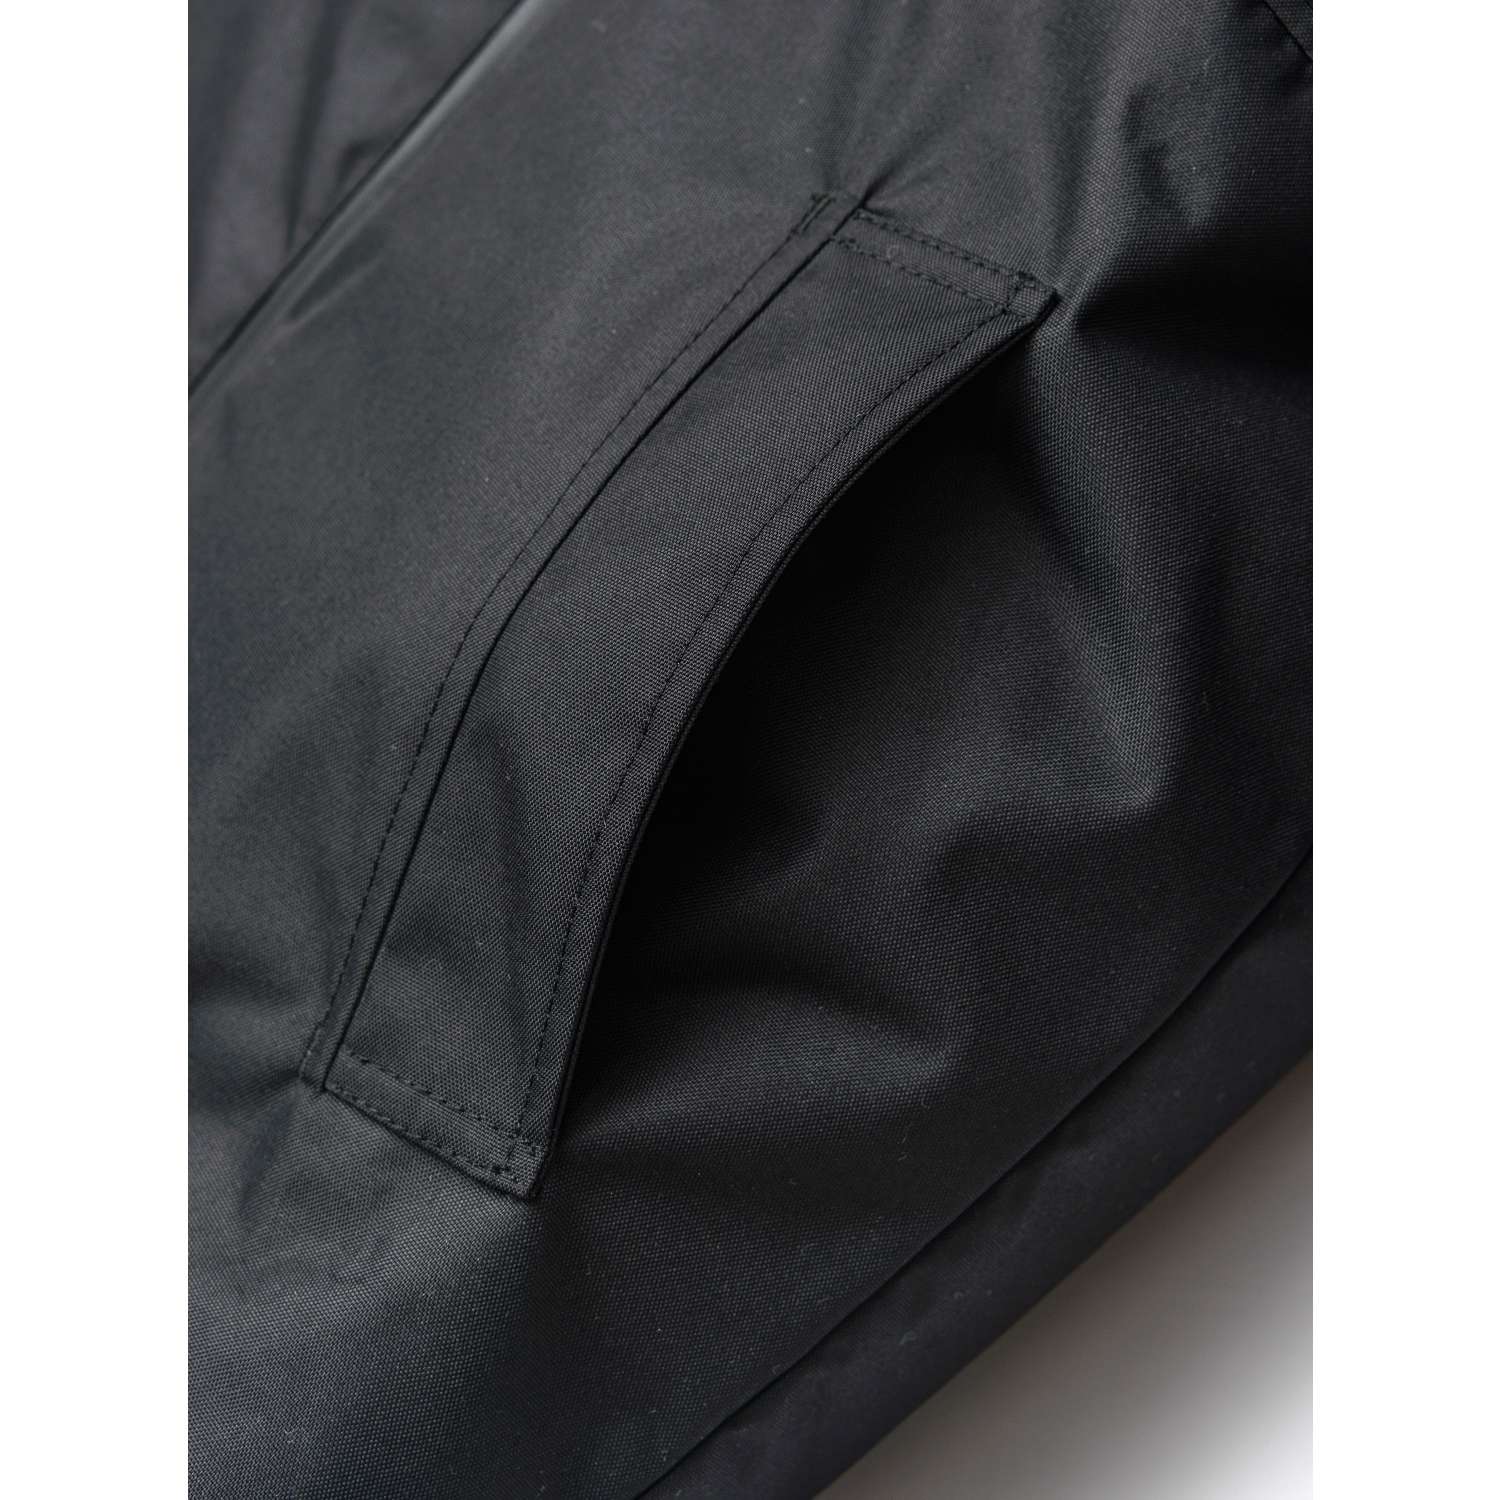 Куртка Orso Bianco OB21095-22_н.черный - фото 12